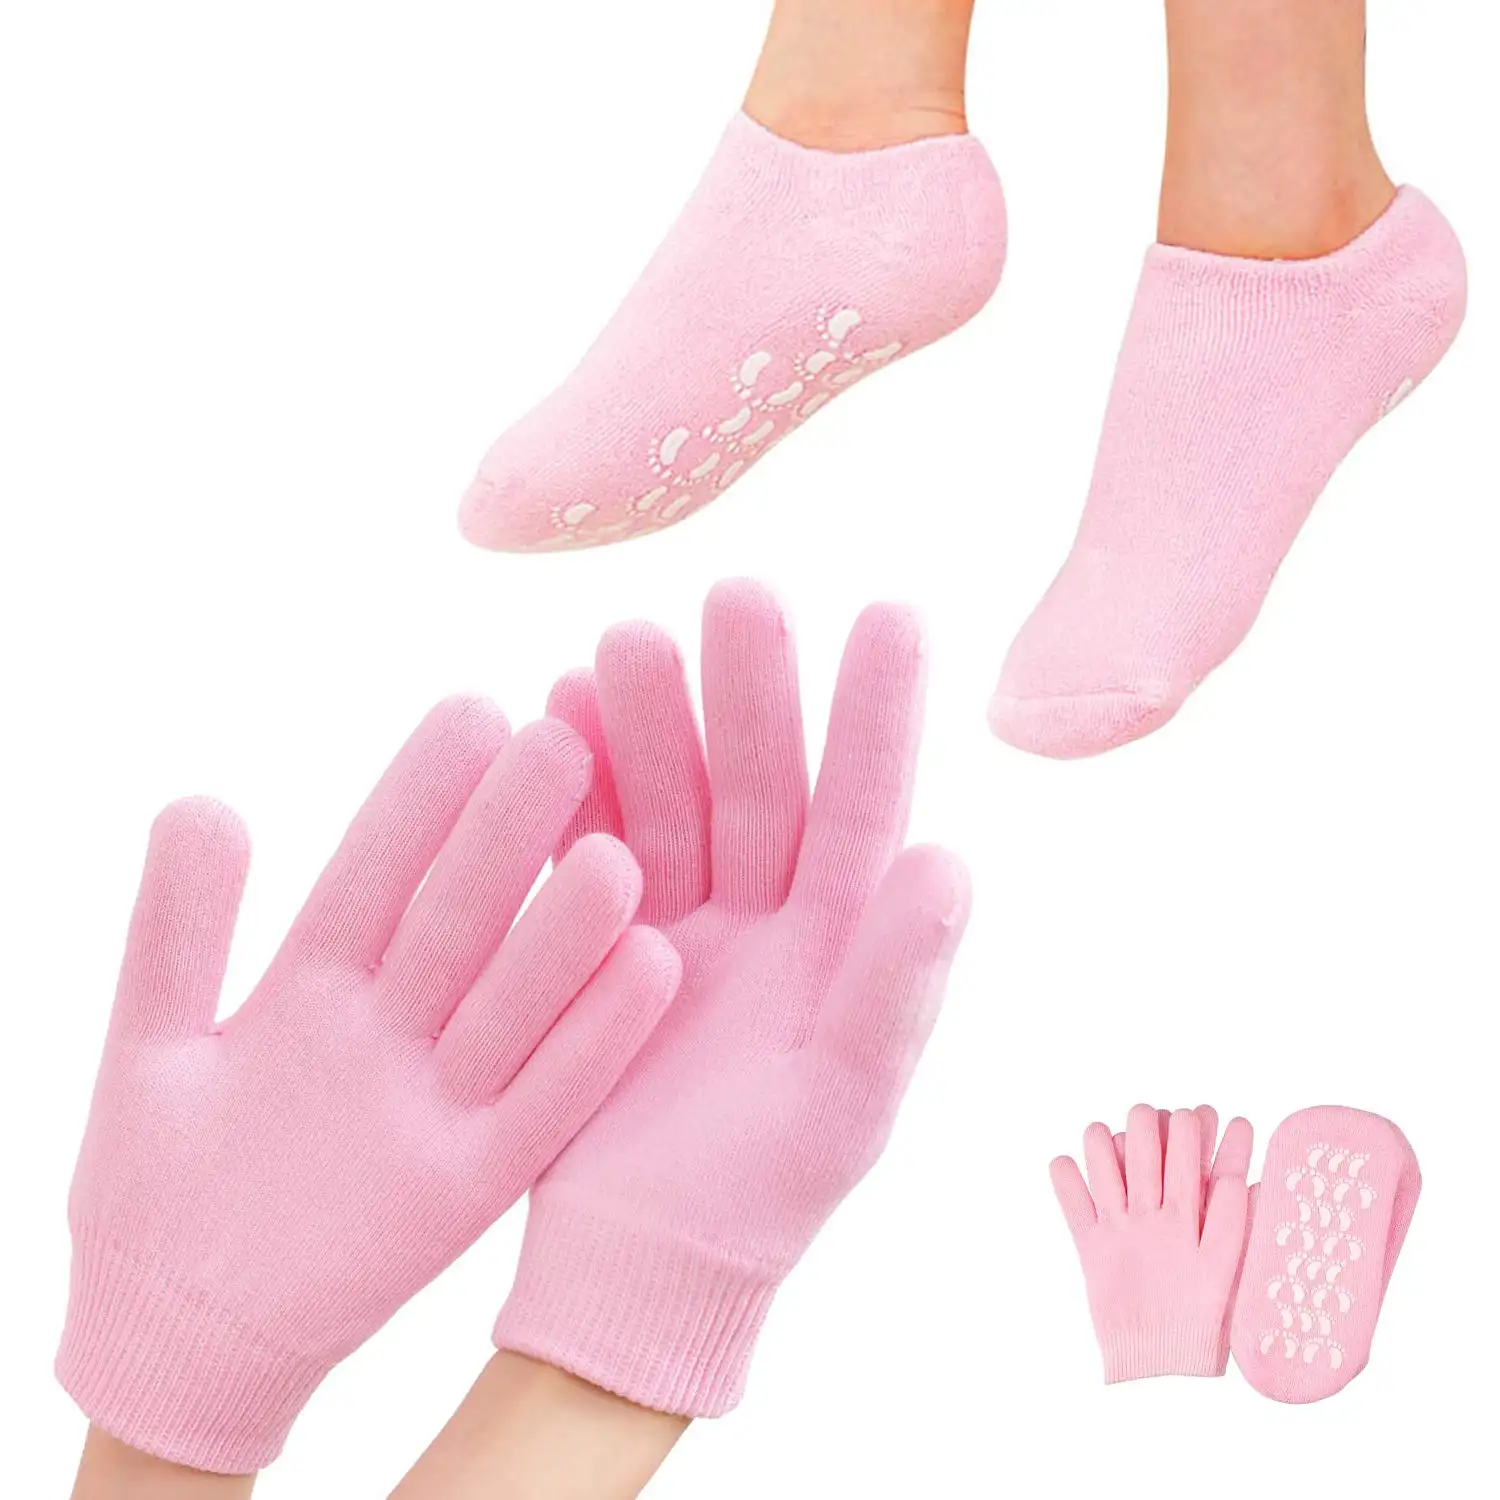 Traitement hydratant réparateur des pieds secs personnalisé Chaussettes de soins de la peau en gel au talon fissuré et gants de beauté pour spa